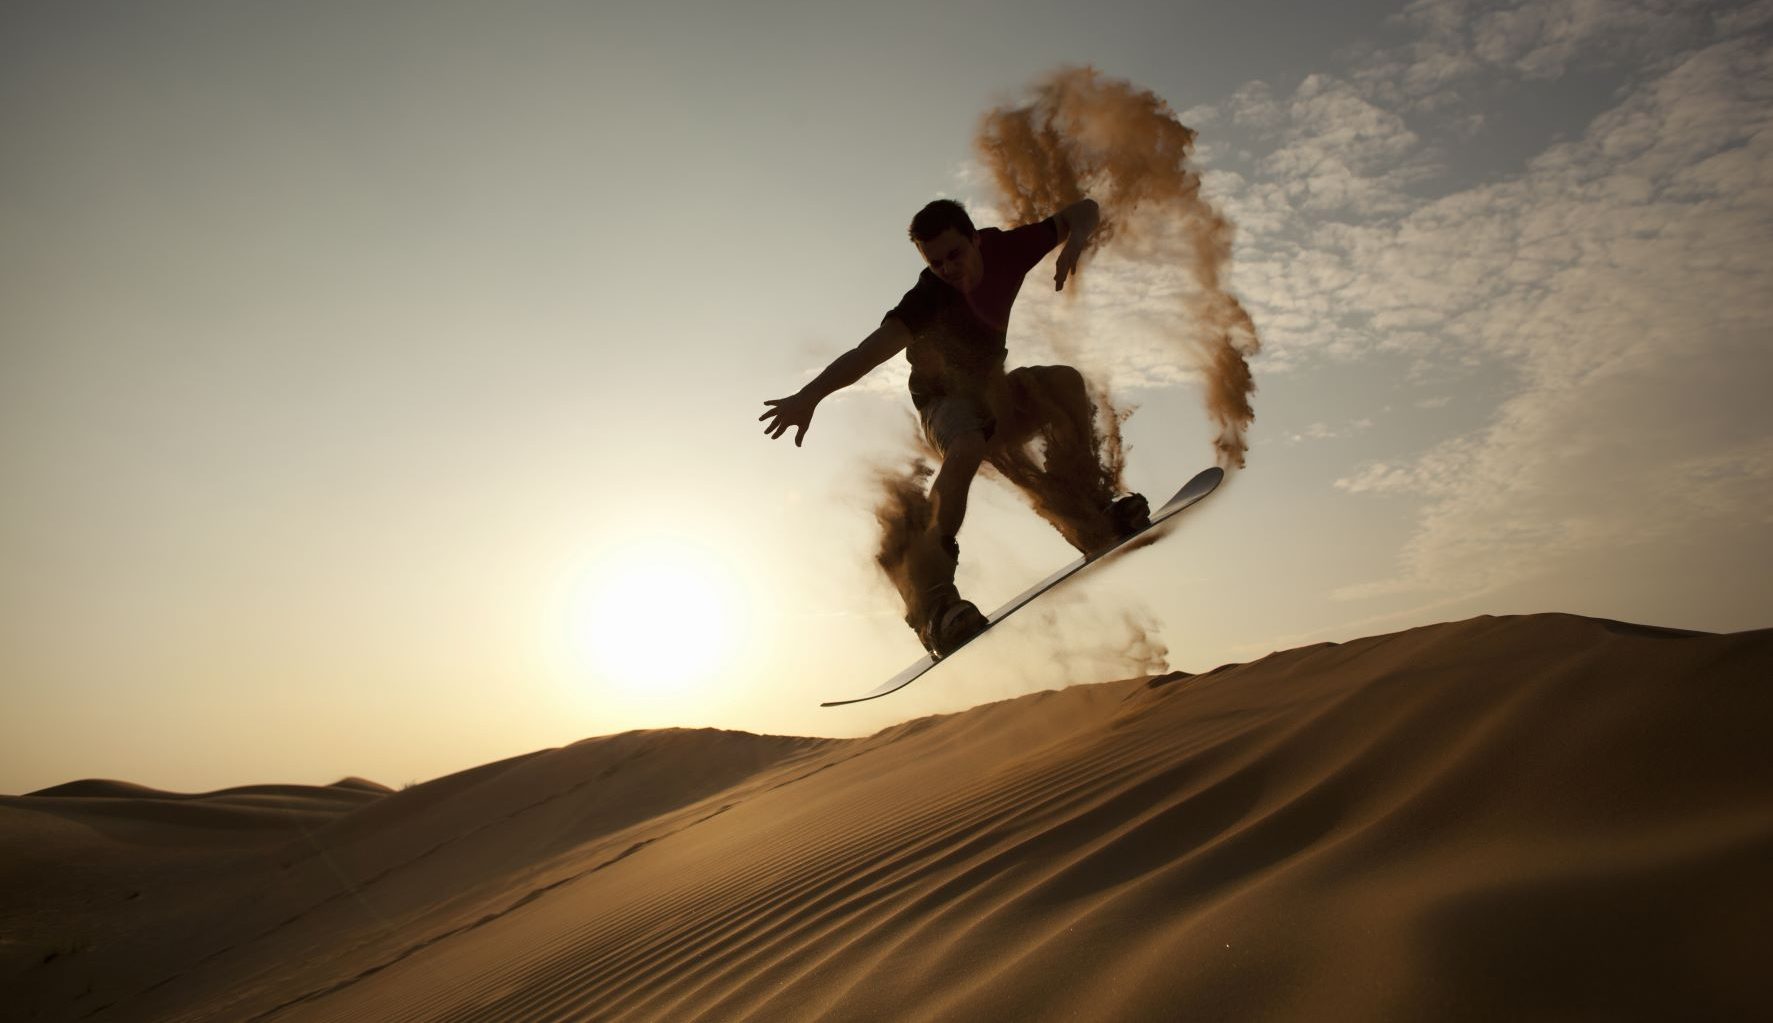 sandboarding in the desert